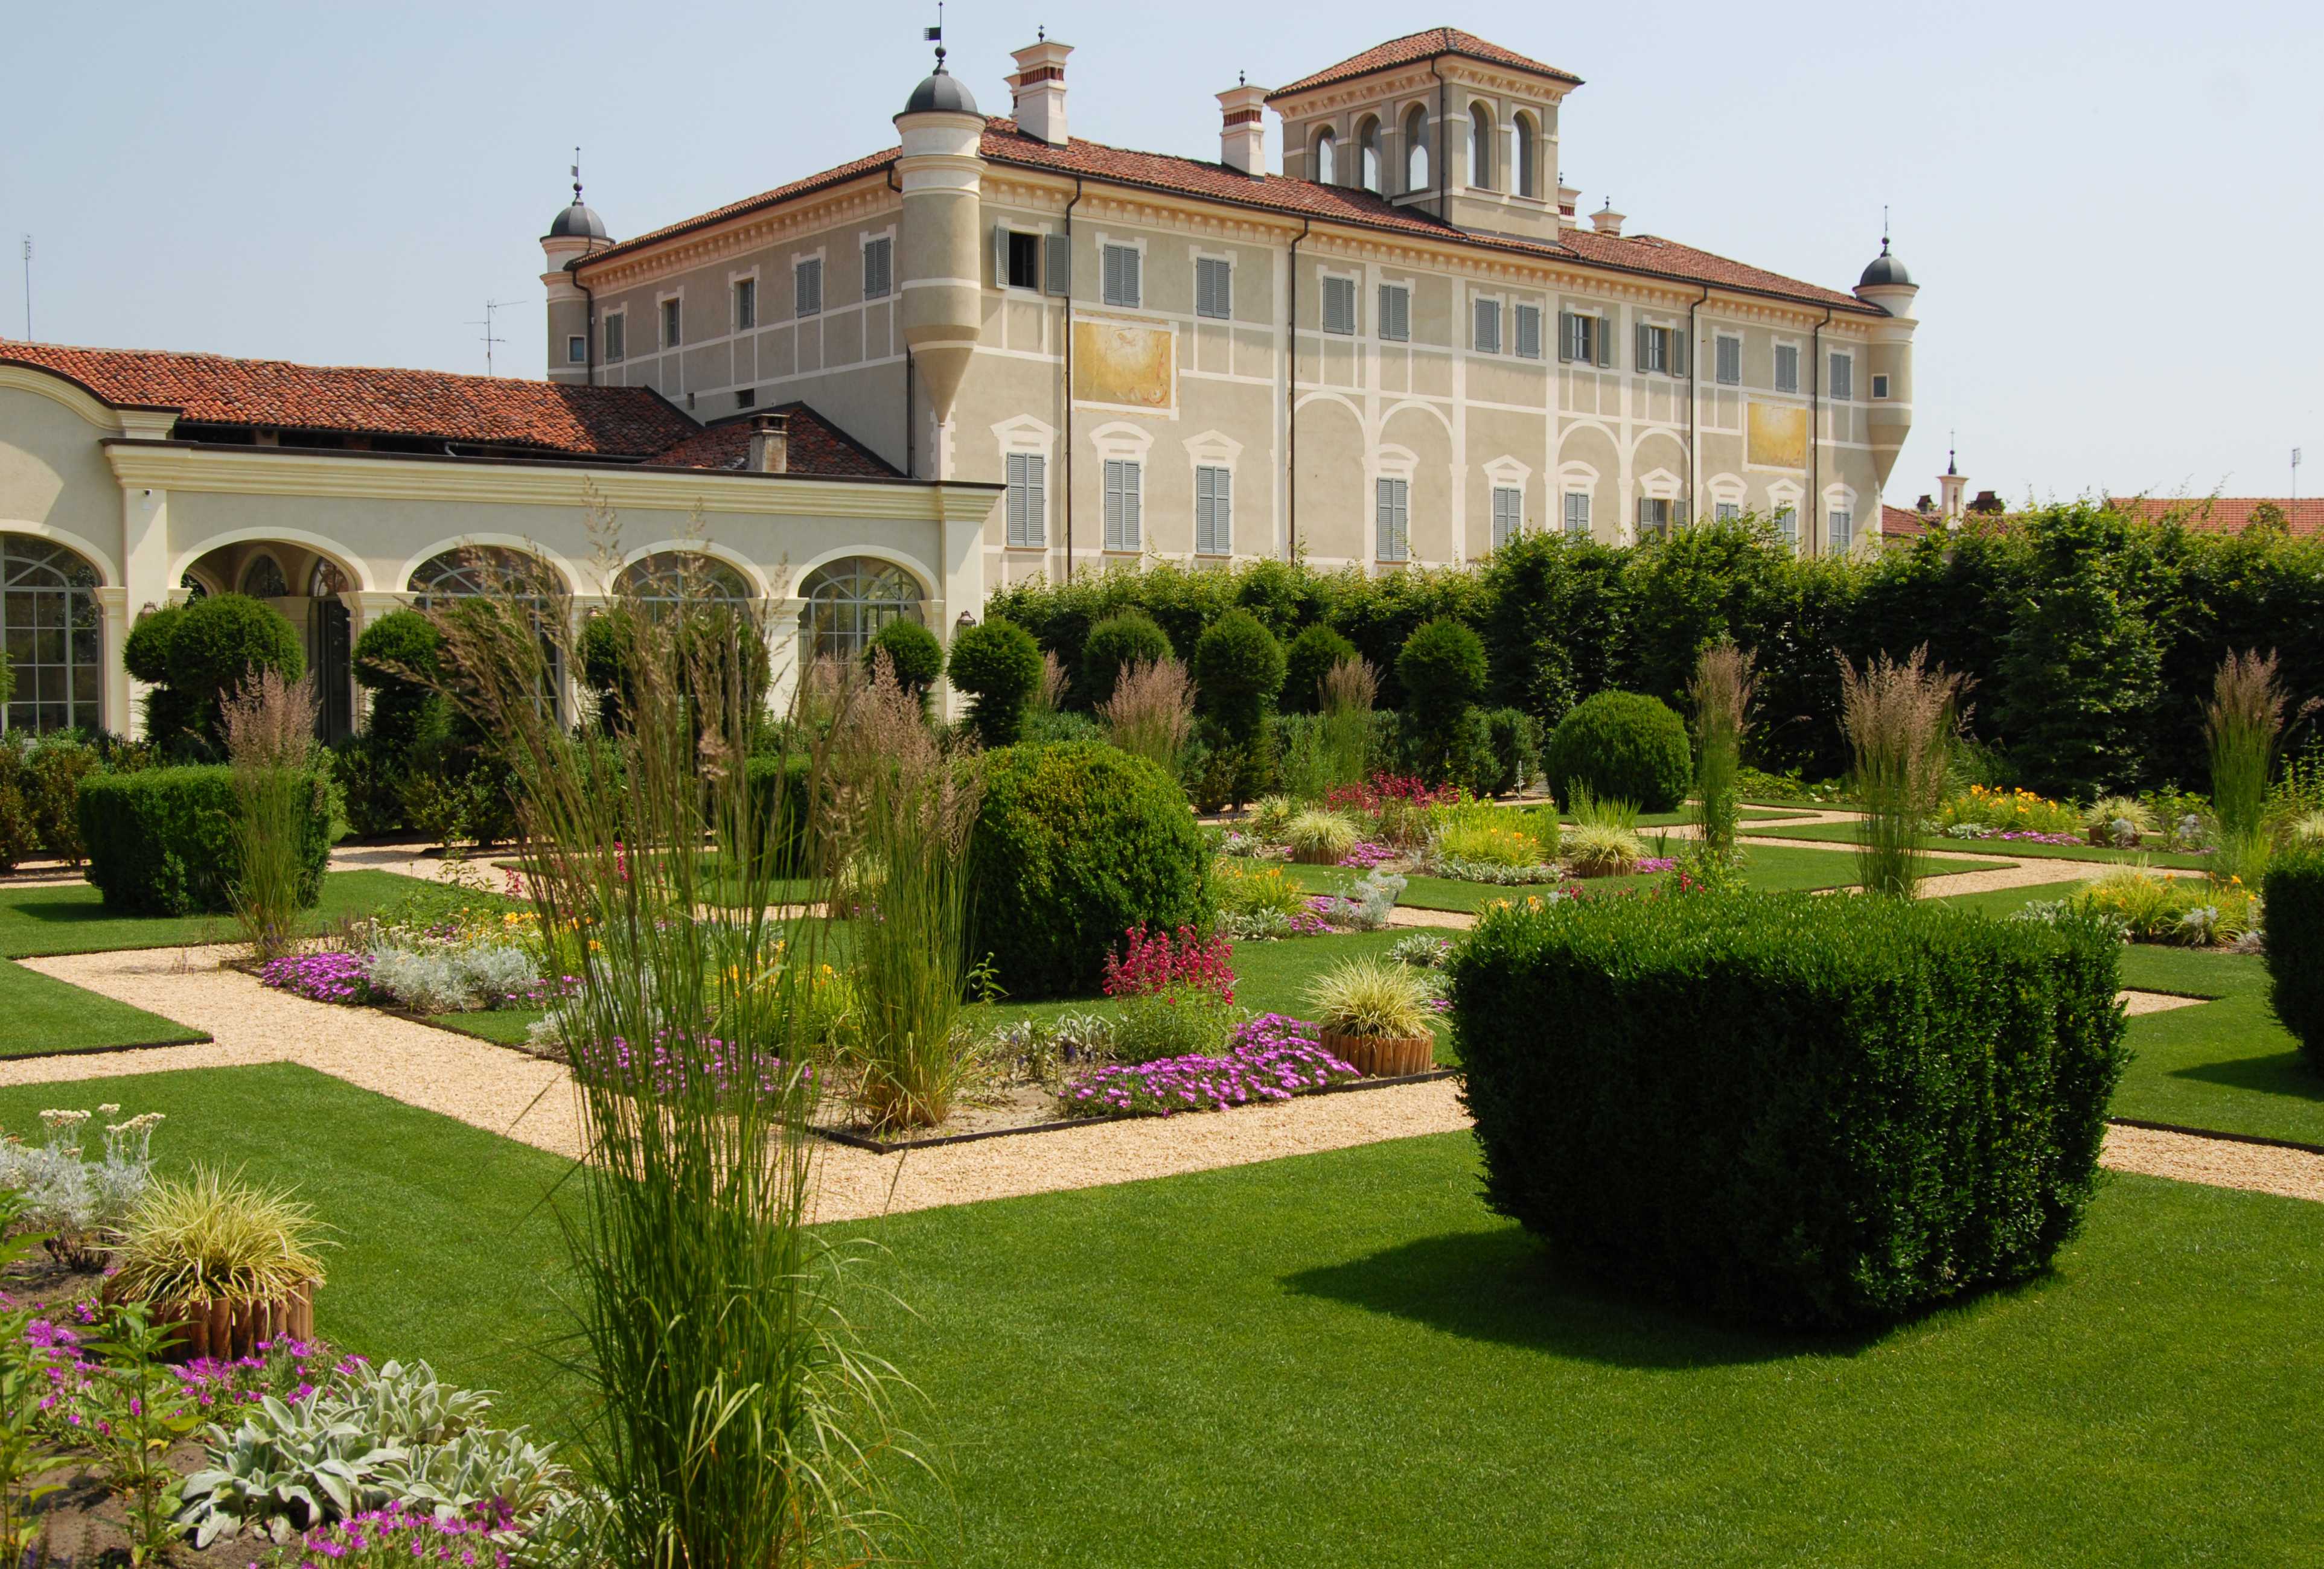 Castello di Grosso - Estate 2014